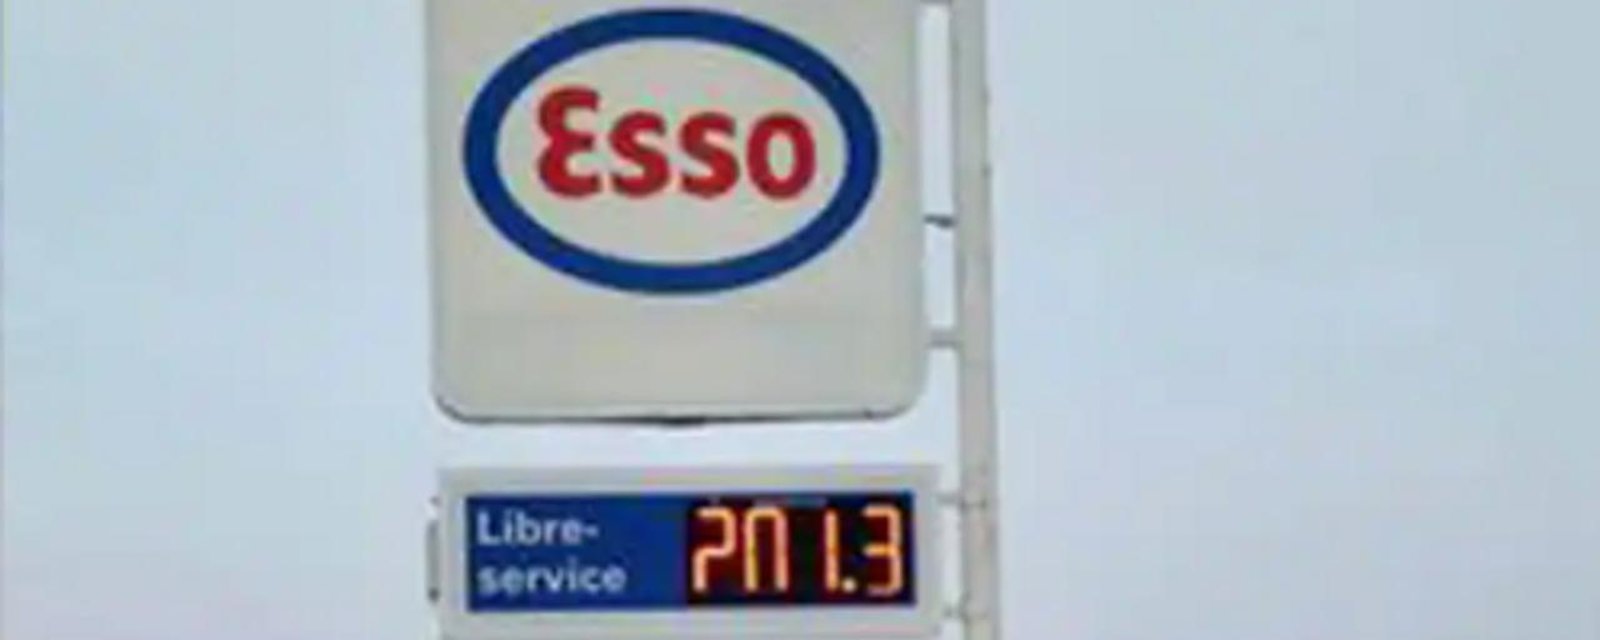 Préparez vous à une montée du prix de l'essence très bientôt.